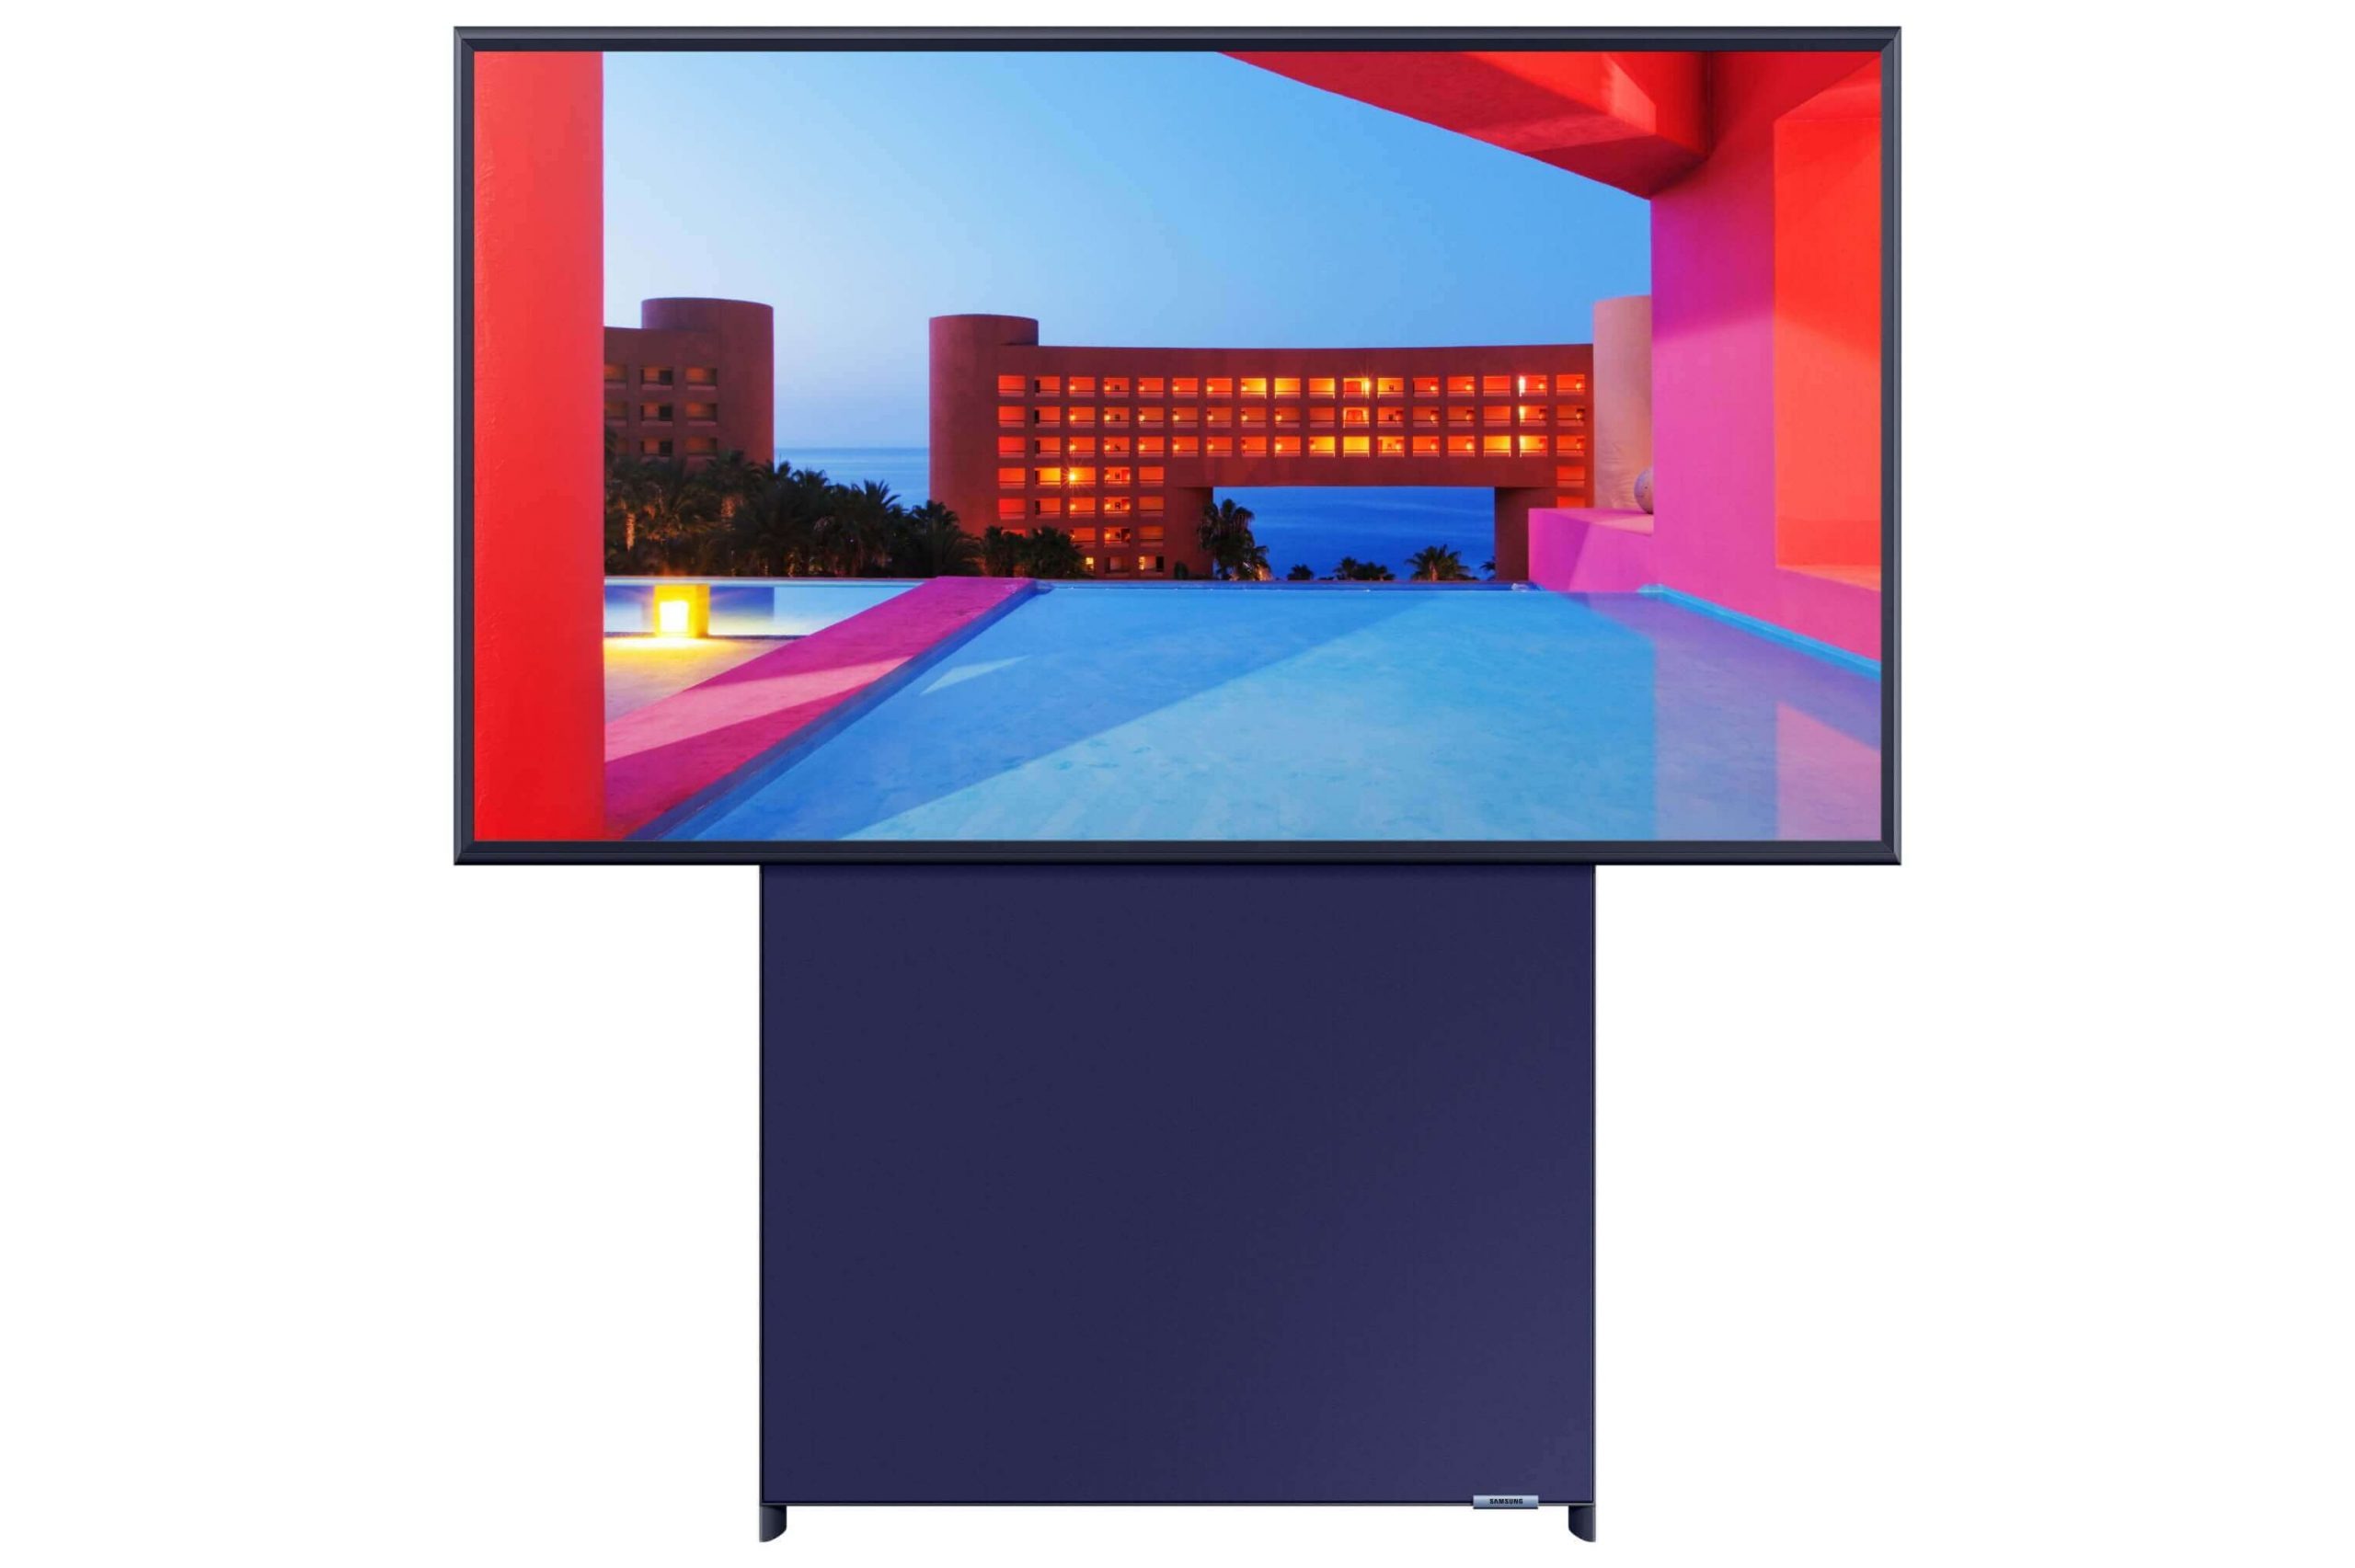 Samsung ya tiene en España su nueva gama Lifestyle TV. The Sero, el primer televisor del mundo con un revolucionario formato vertical, llega de la mano de Samsung a España. La marca renueva así su gama Lifestyle de televisores, con los nuevos modelos de The Serif y The Frame.